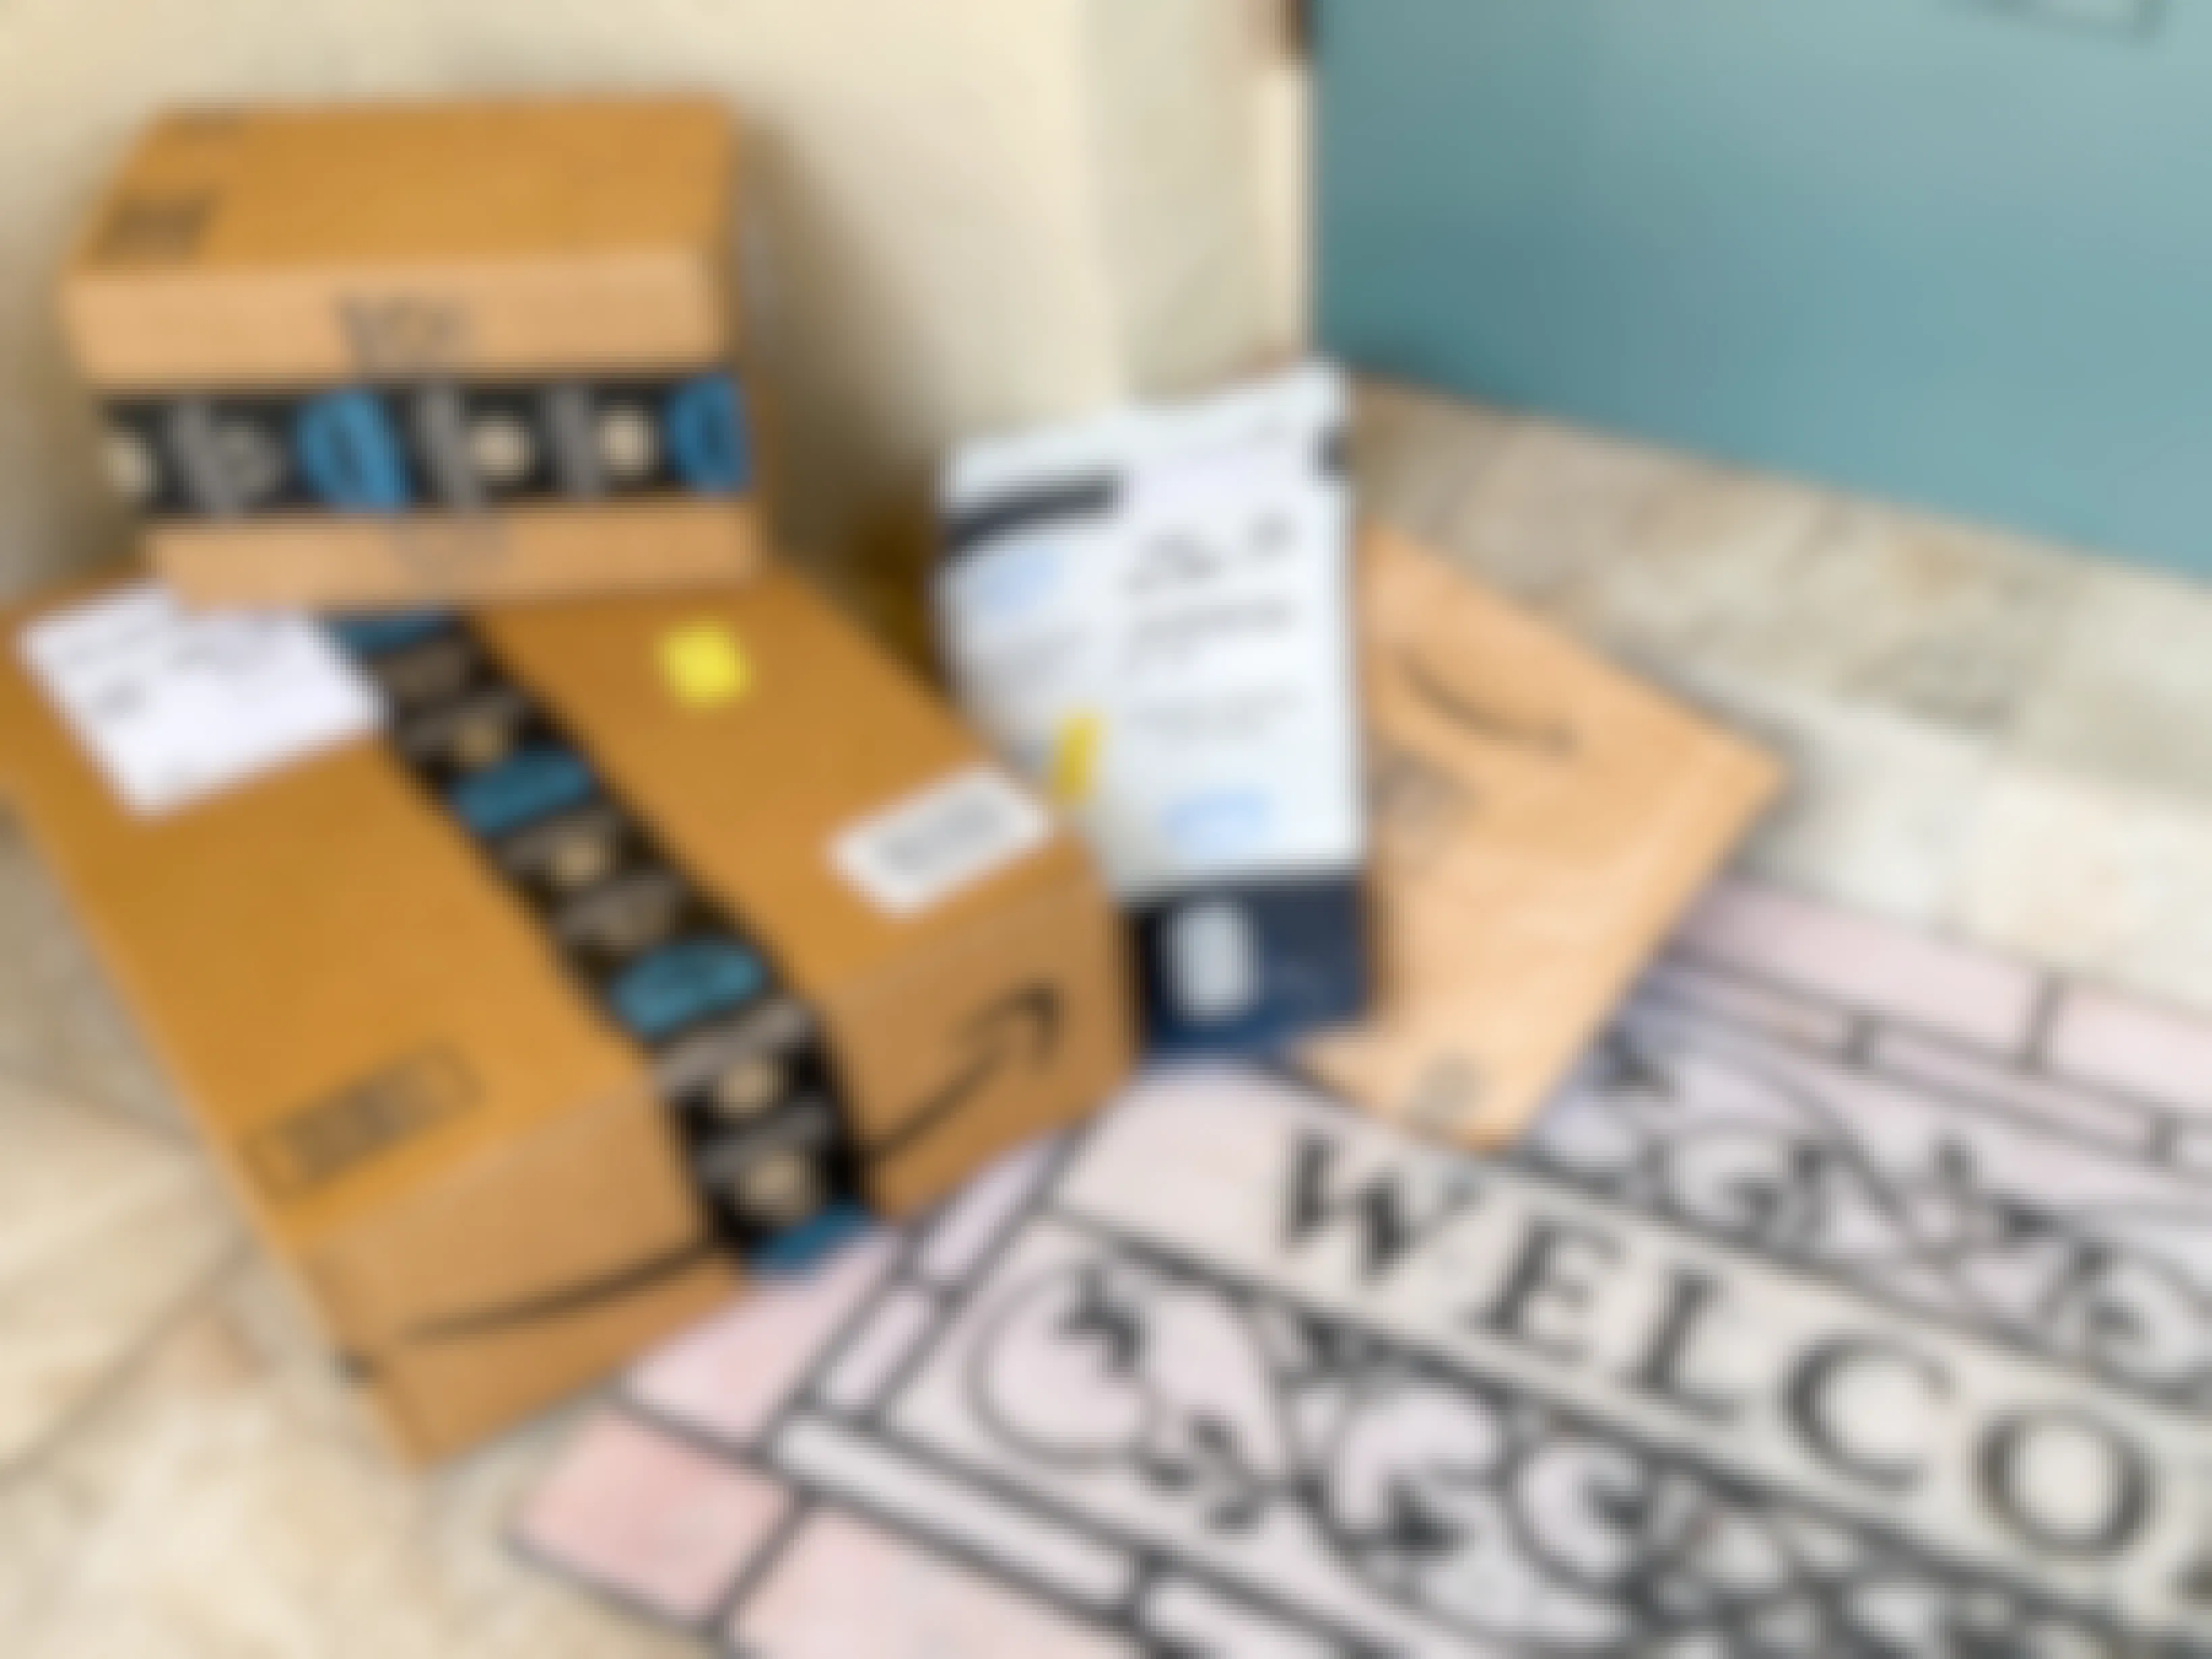 Amazon boxes sitting next to a doorstep.